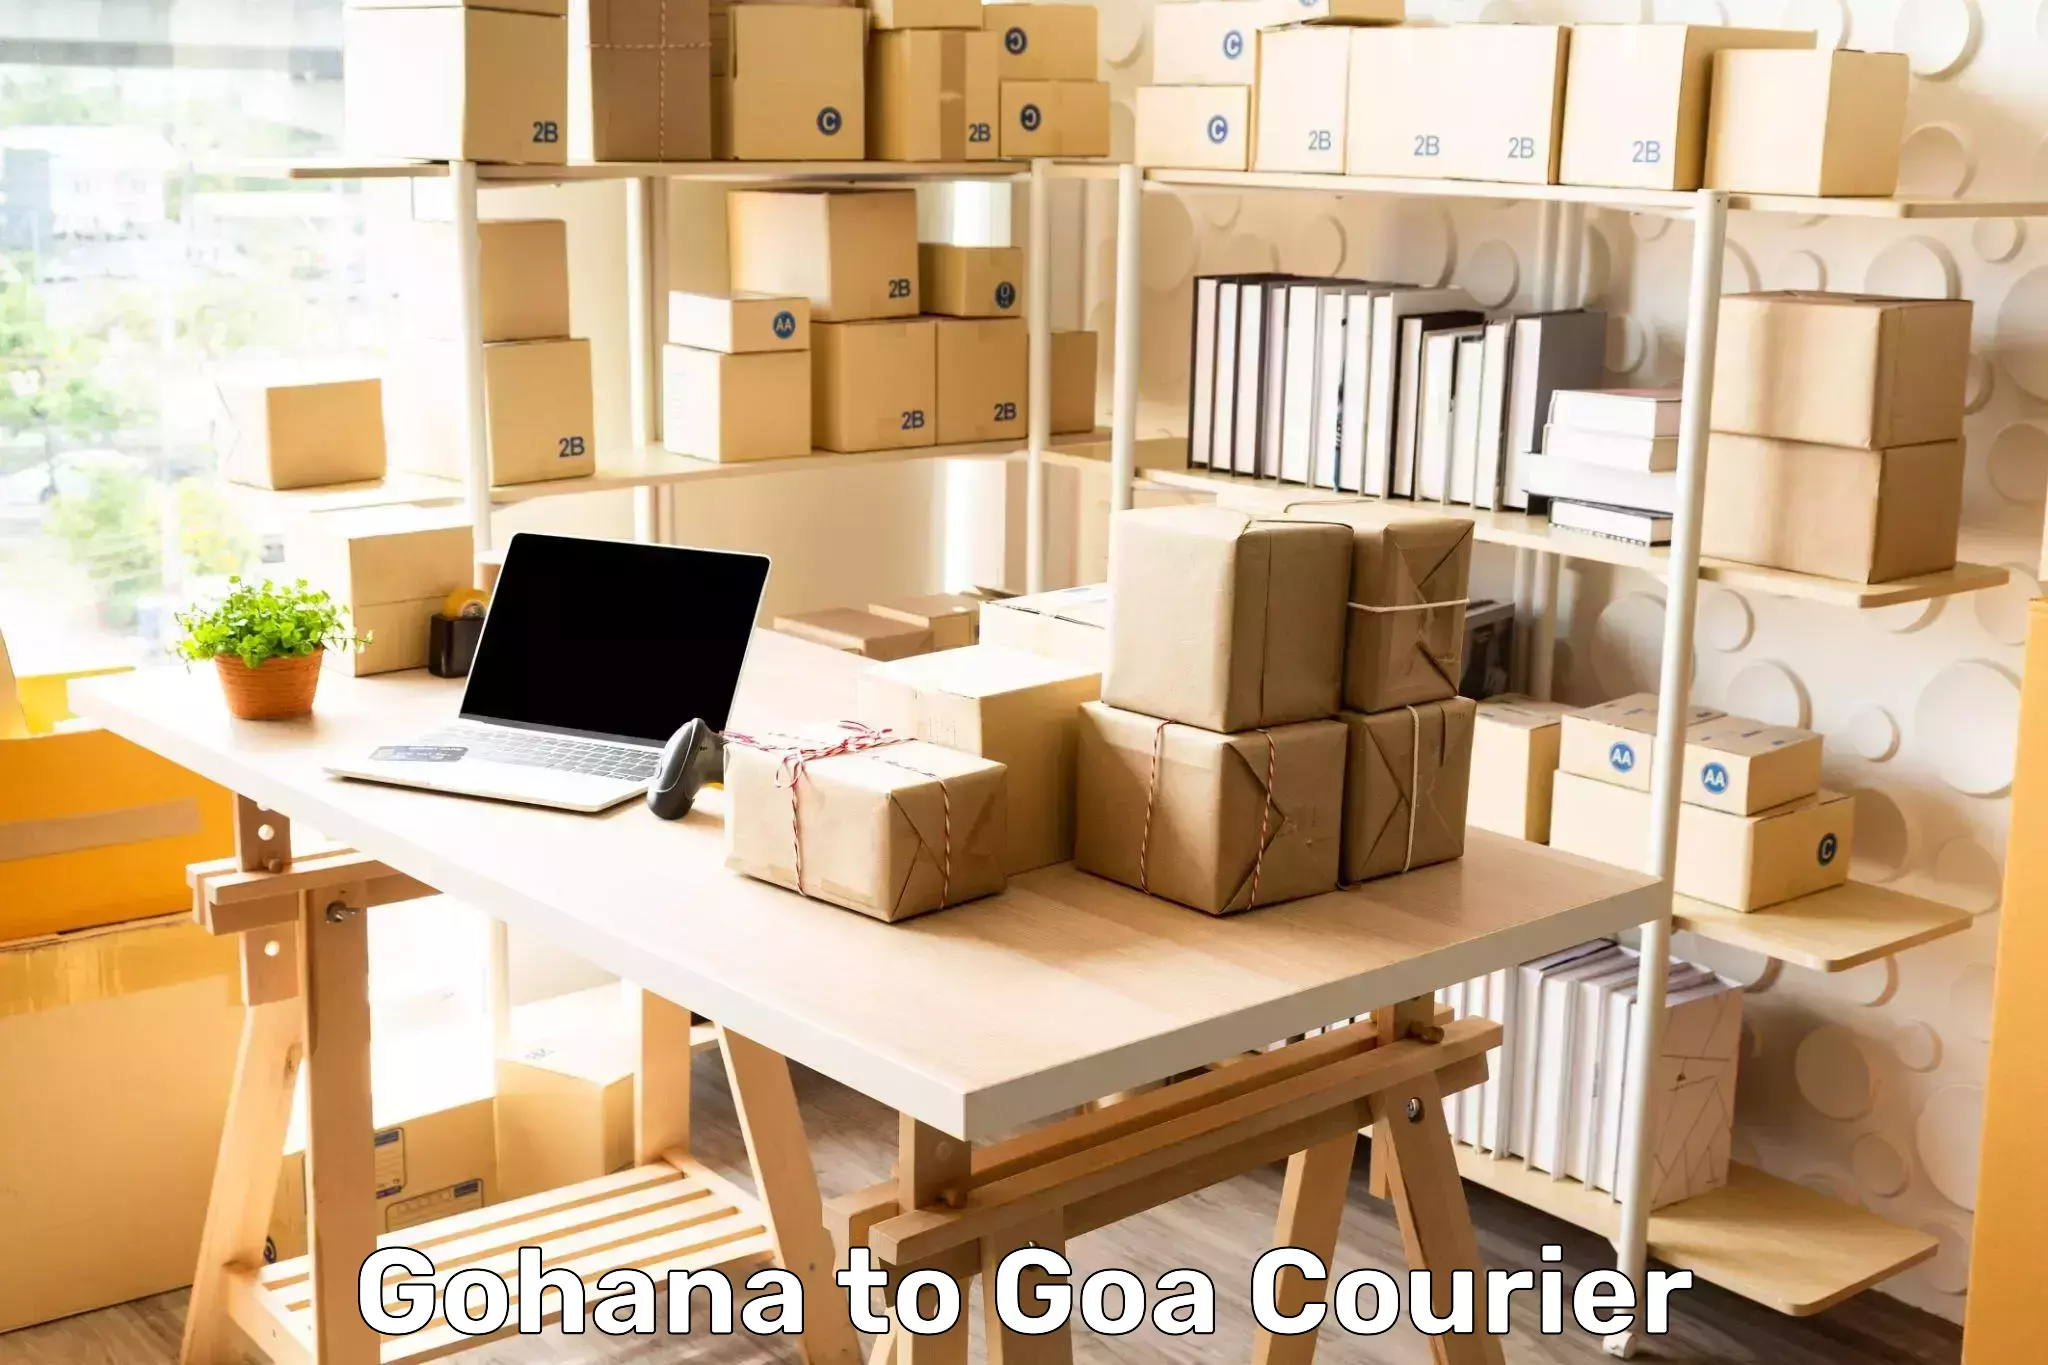 Cargo courier service Gohana to Vasco da Gama